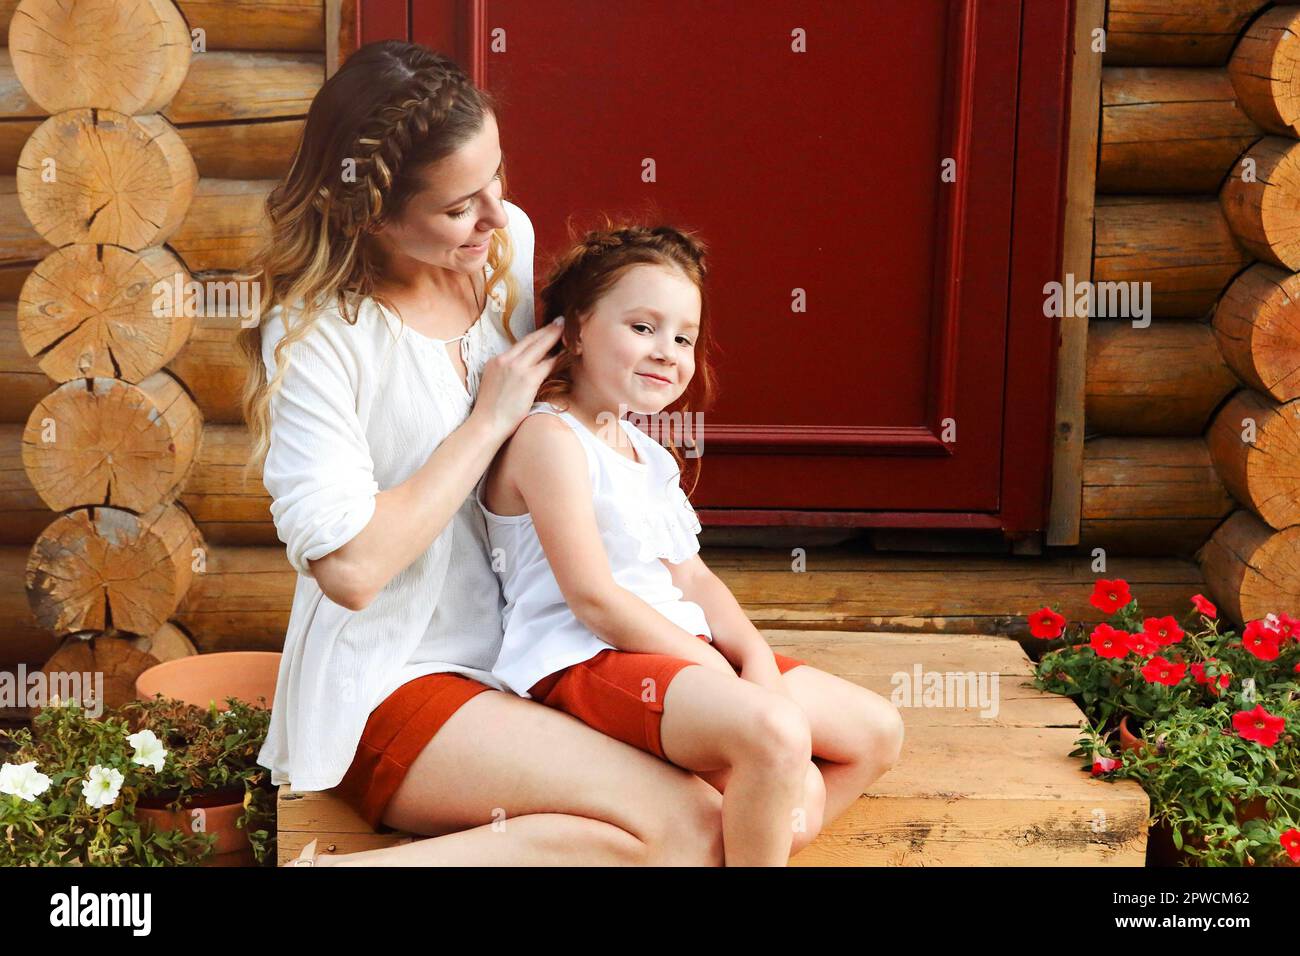 Nette kleine Rotschopf Mädchen und glücklich junge Mutter mit ähnlichen Geflochtene Frisur umarmt sich zusammen, während sie gegen die rote Tür steht Stockfoto